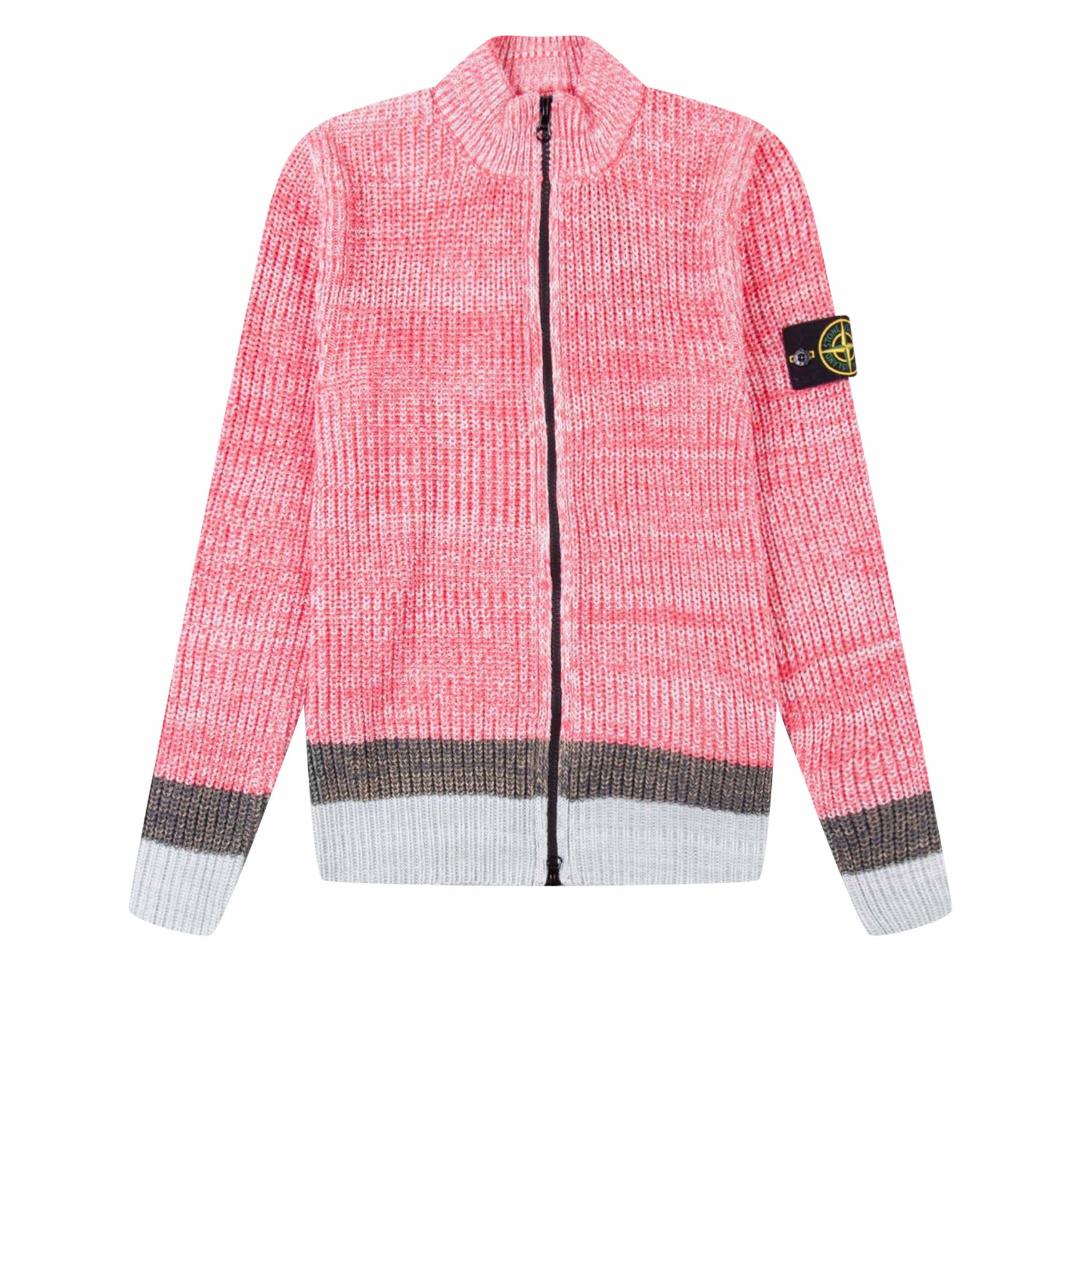 STONE ISLAND Розовый хлопковый джемпер / свитер, фото 1